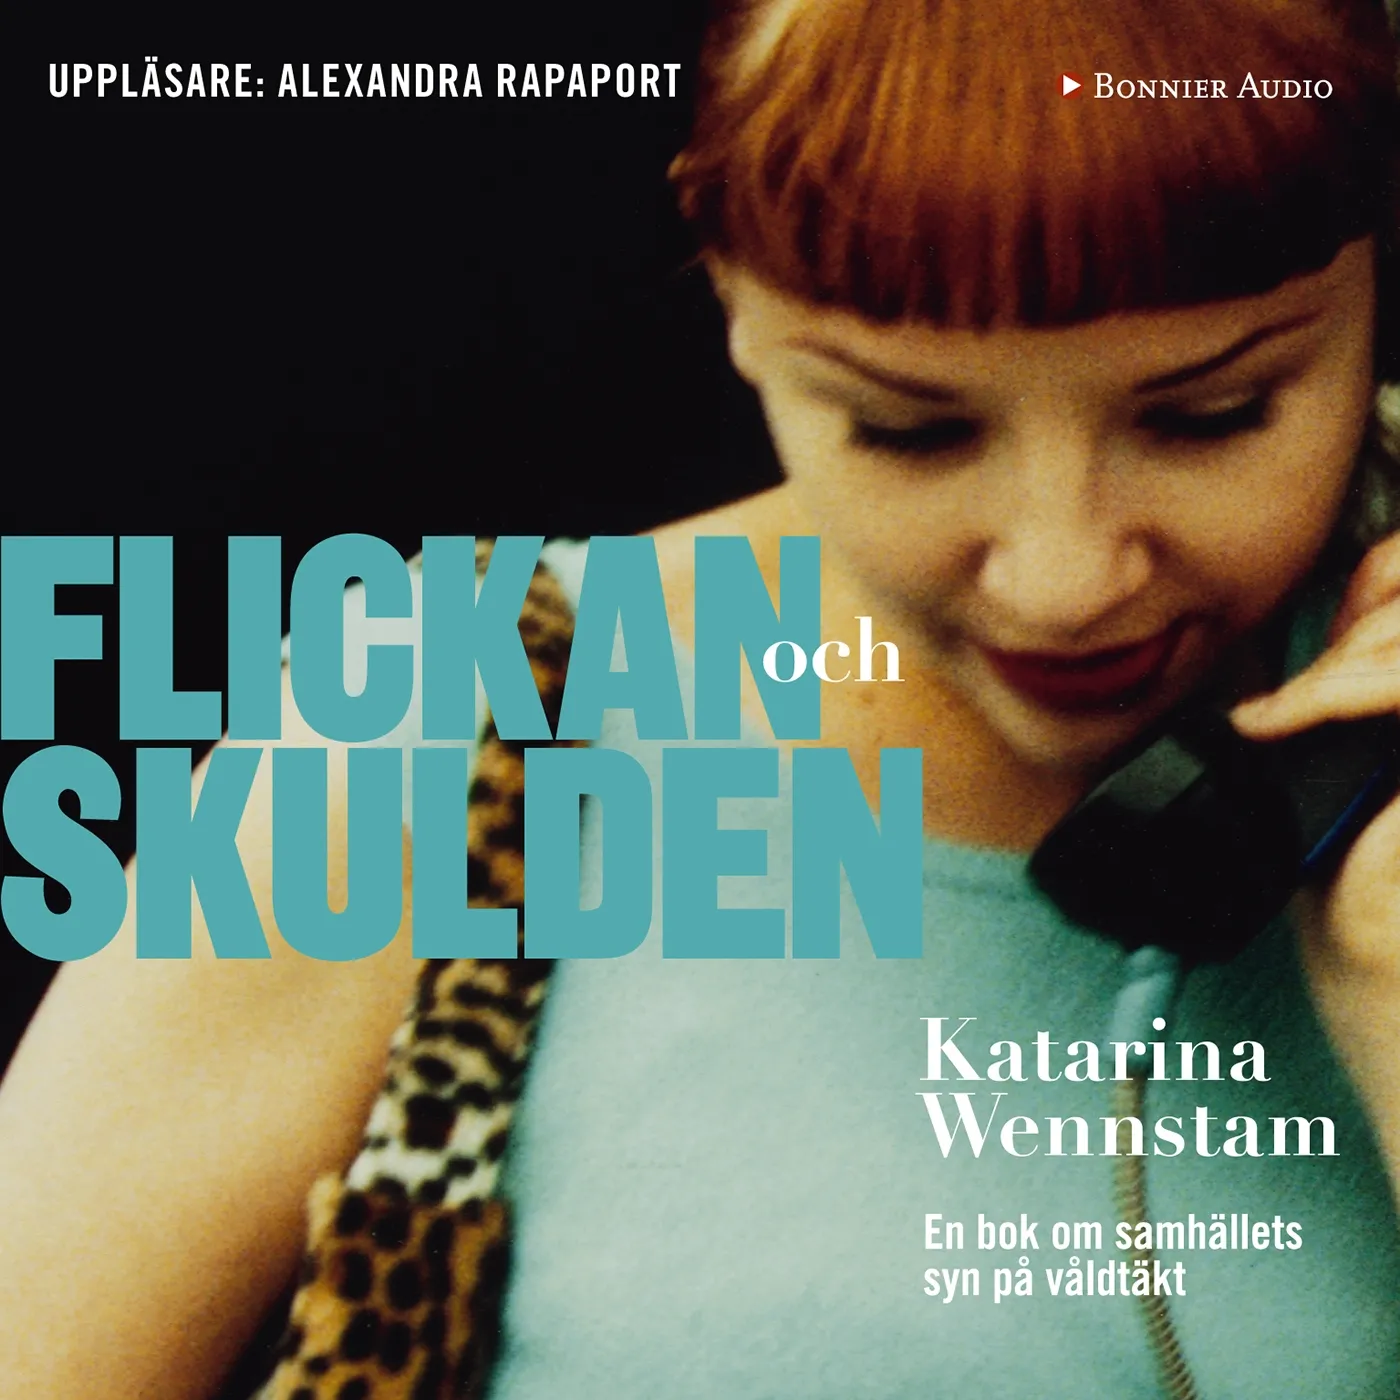 Flickan och skulden : En bok om samhällets syn på våldtäkt, audiobook by Katarina Wennstam